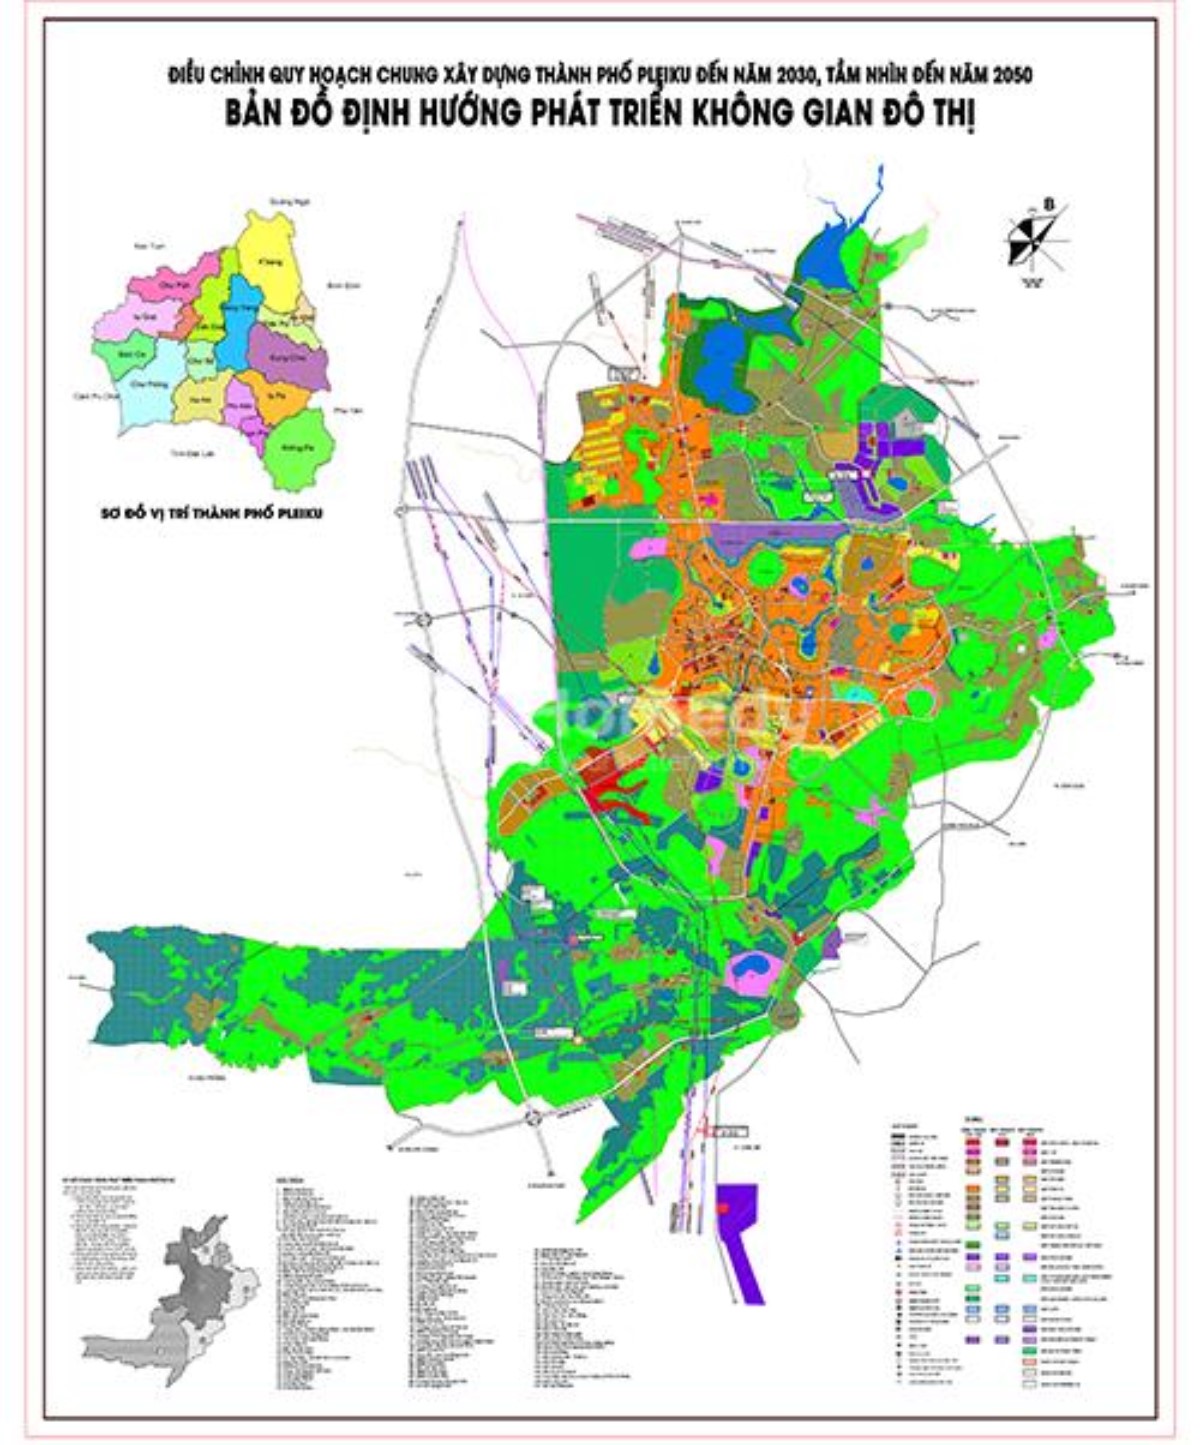 Bản đồ quy hoạch Pleiku 2030 là tài liệu vô cùng quan trọng để thấy được những tiềm năng, cơ hội của địa phương trong tương lai. Với sự đầu tư và phát triển, Pleiku chắc chắn sẽ trở thành một địa điểm nổi bật của khu vực Tây Nguyên.